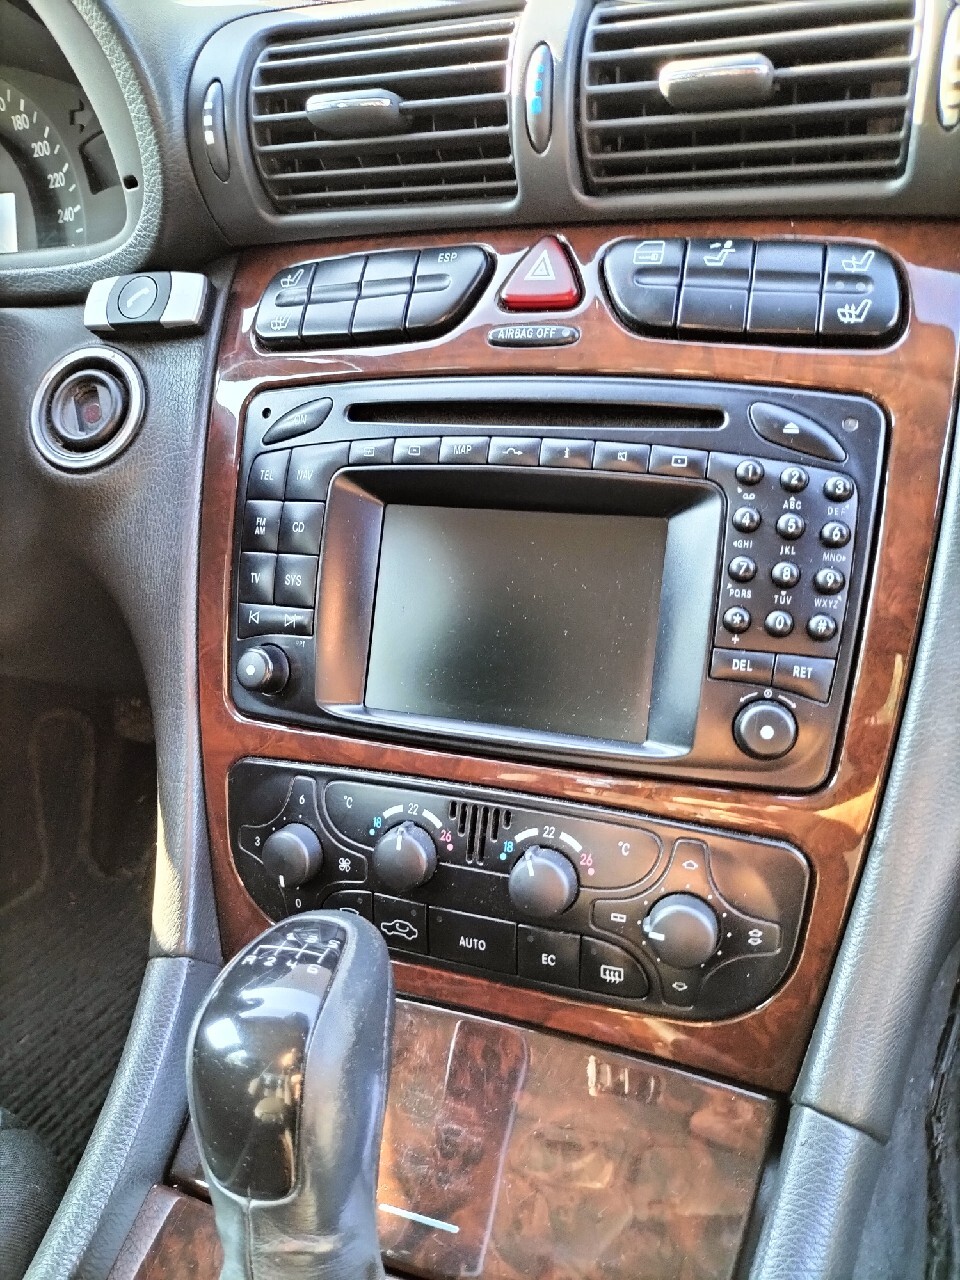 Radio Comand 2.0 nawigacja Mercedes w203 w463 CLK, ŁÓDŹ